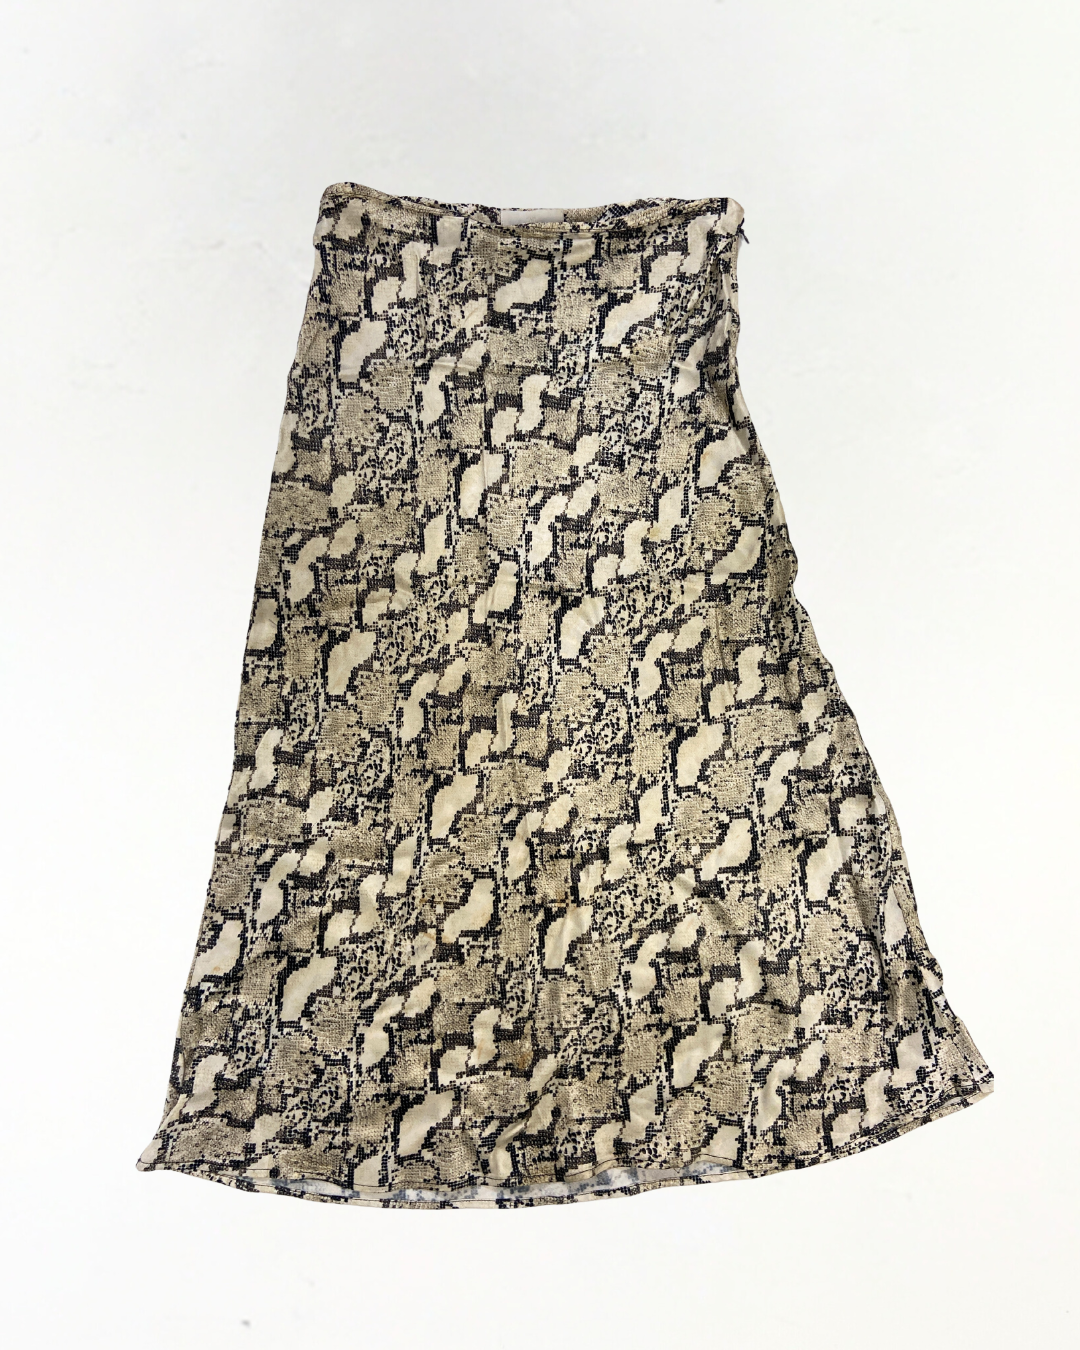 H&amp;M Snake Print Slip Skirt Size 10